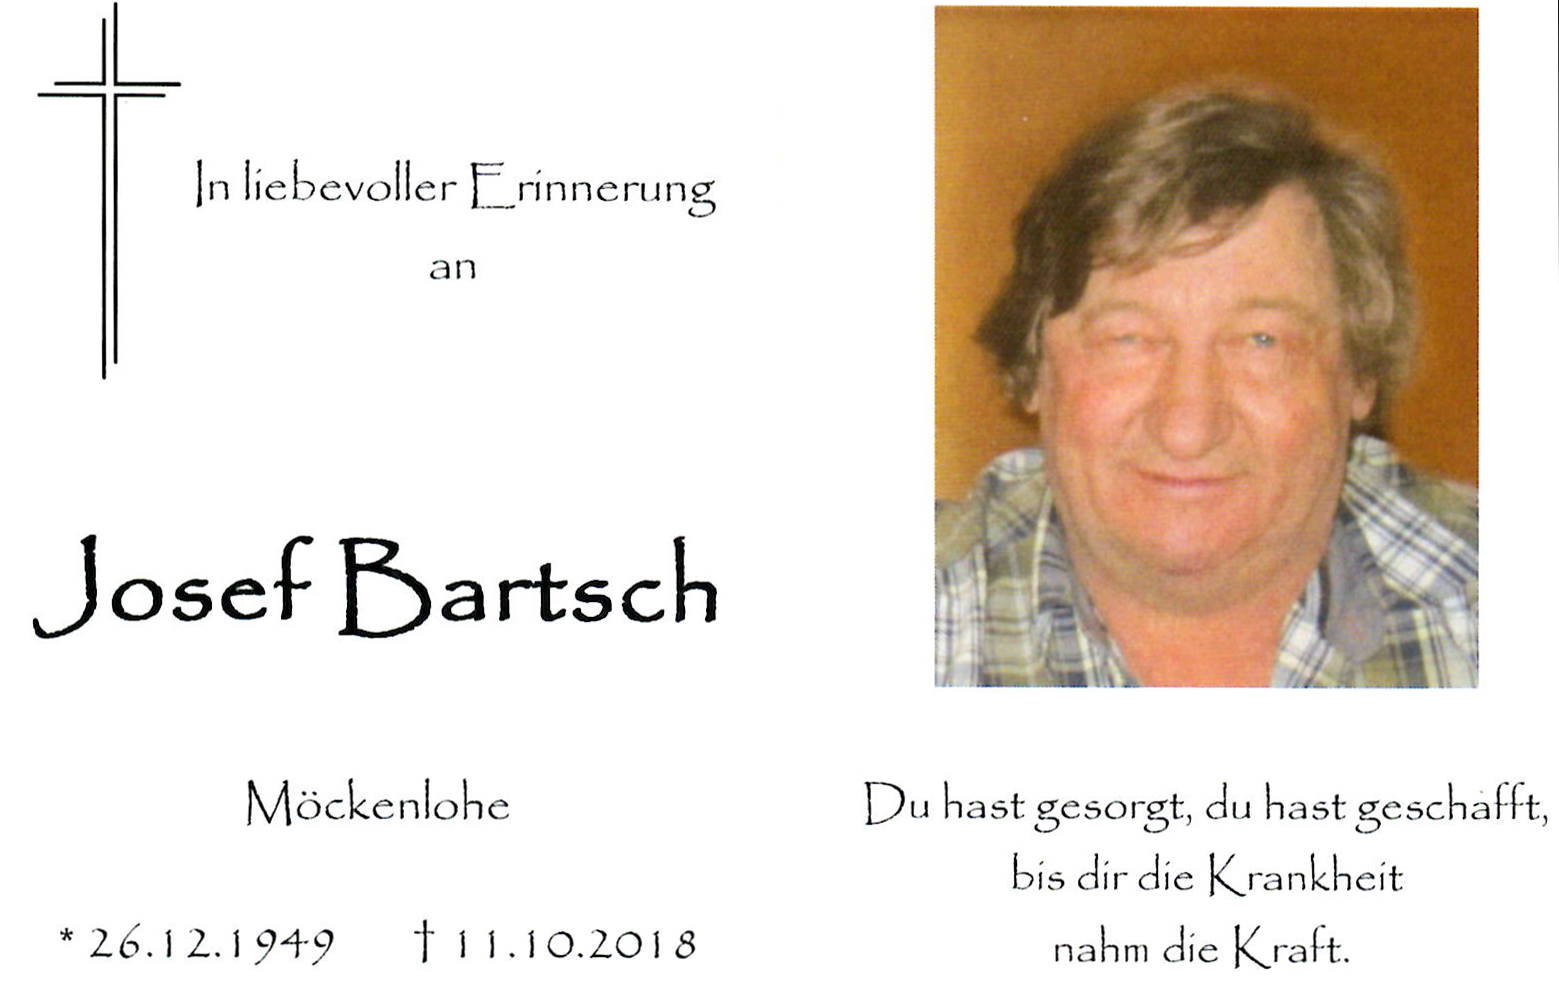 Bartsch Josef